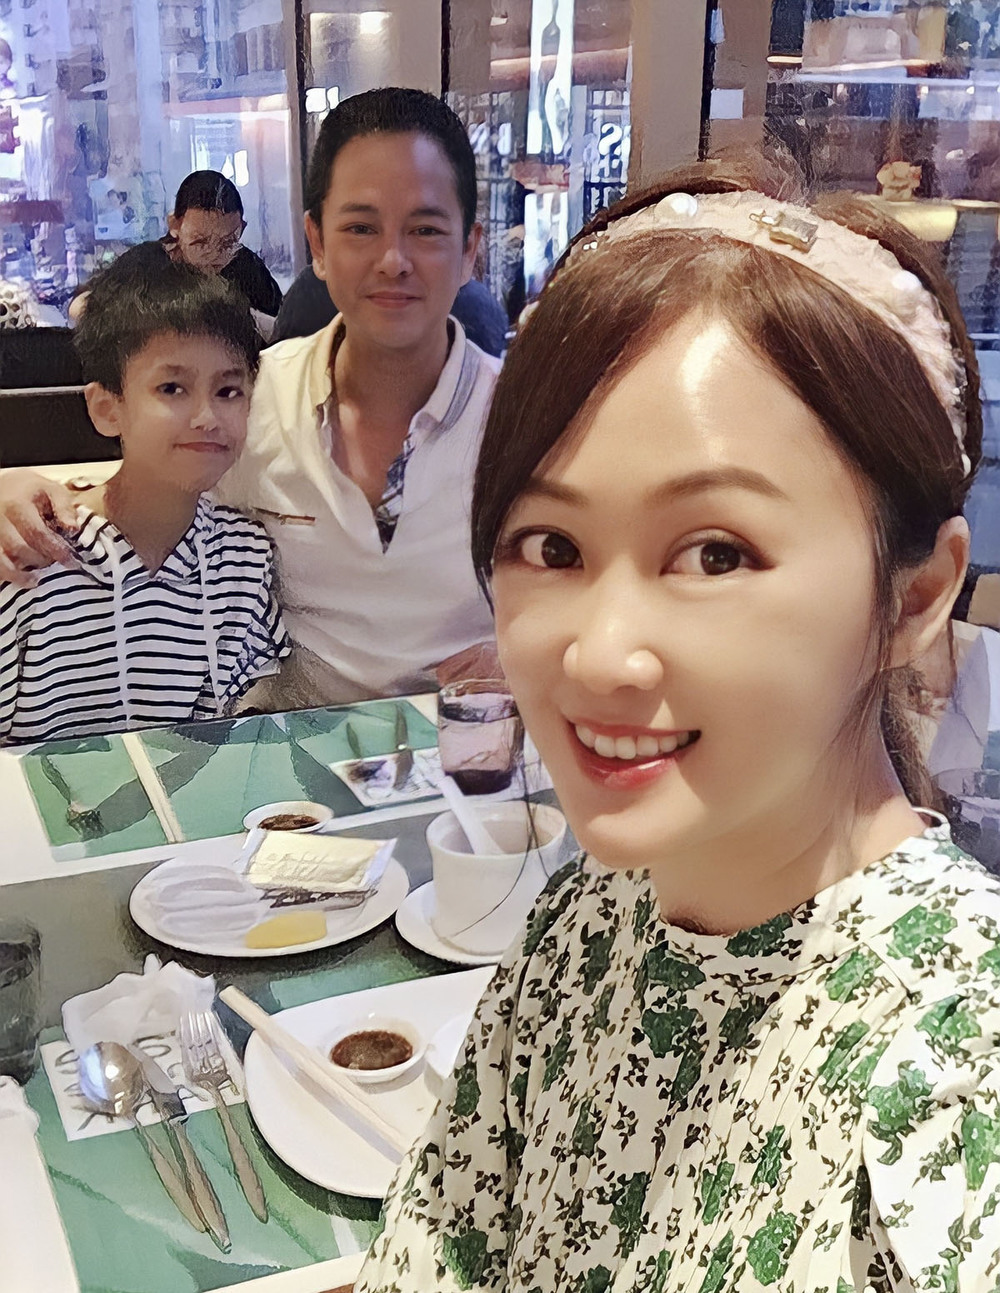  
Nữ diễn viên thường xuyên khoe ảnh đi ăn cùng chồng và con trai. (Ảnh: Weibo)